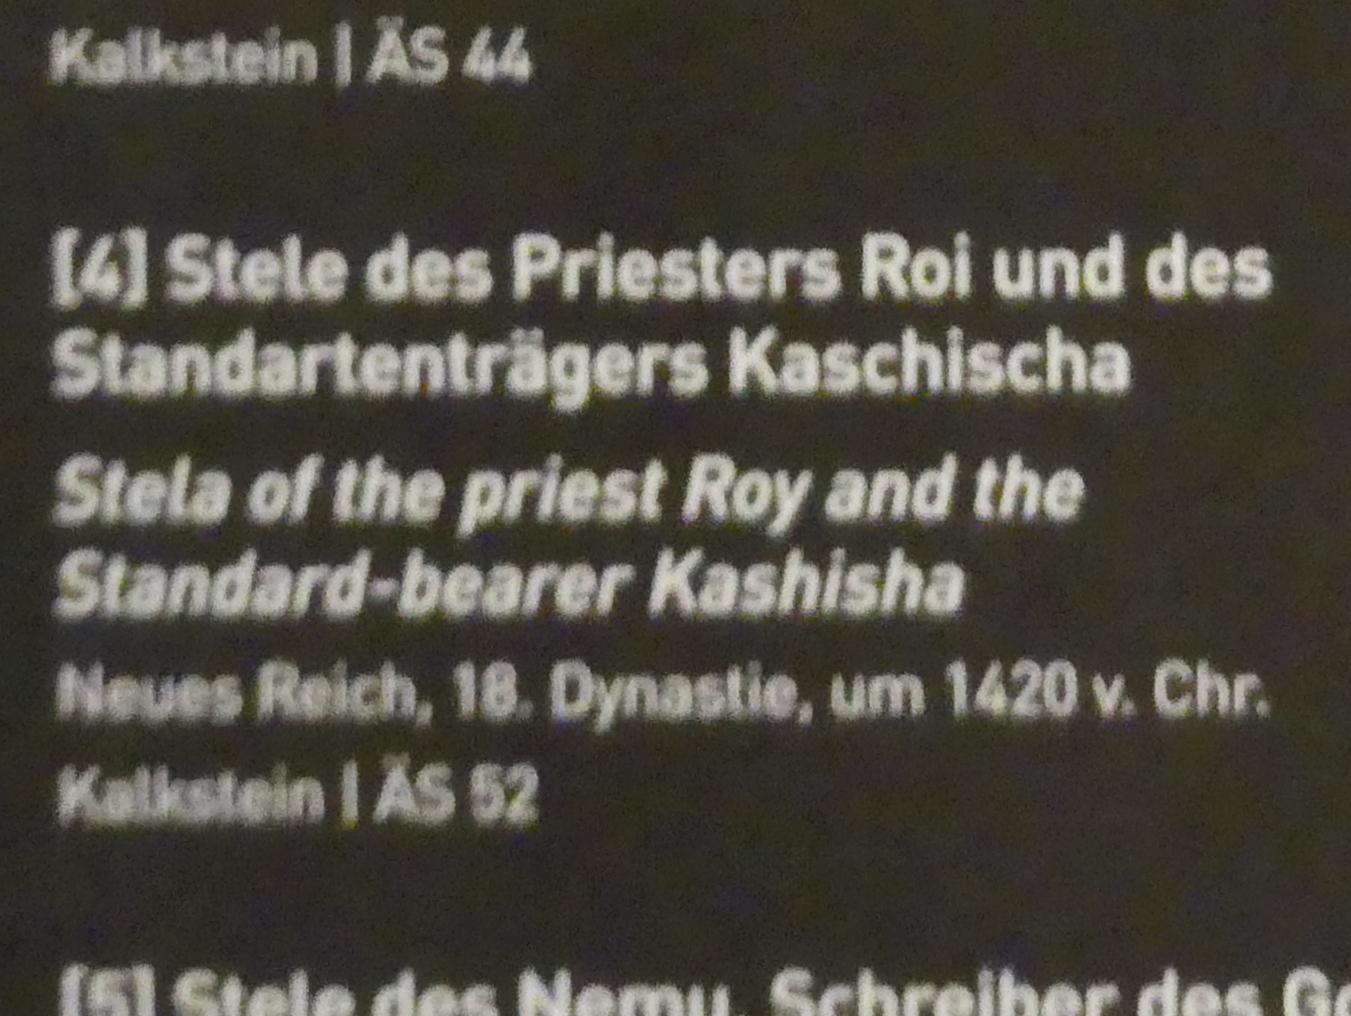 Stele des Priesters Roi und des Standartenträgers Kaschischa, 18. Dynastie, Undatiert, 1420 v. Chr., Bild 2/2